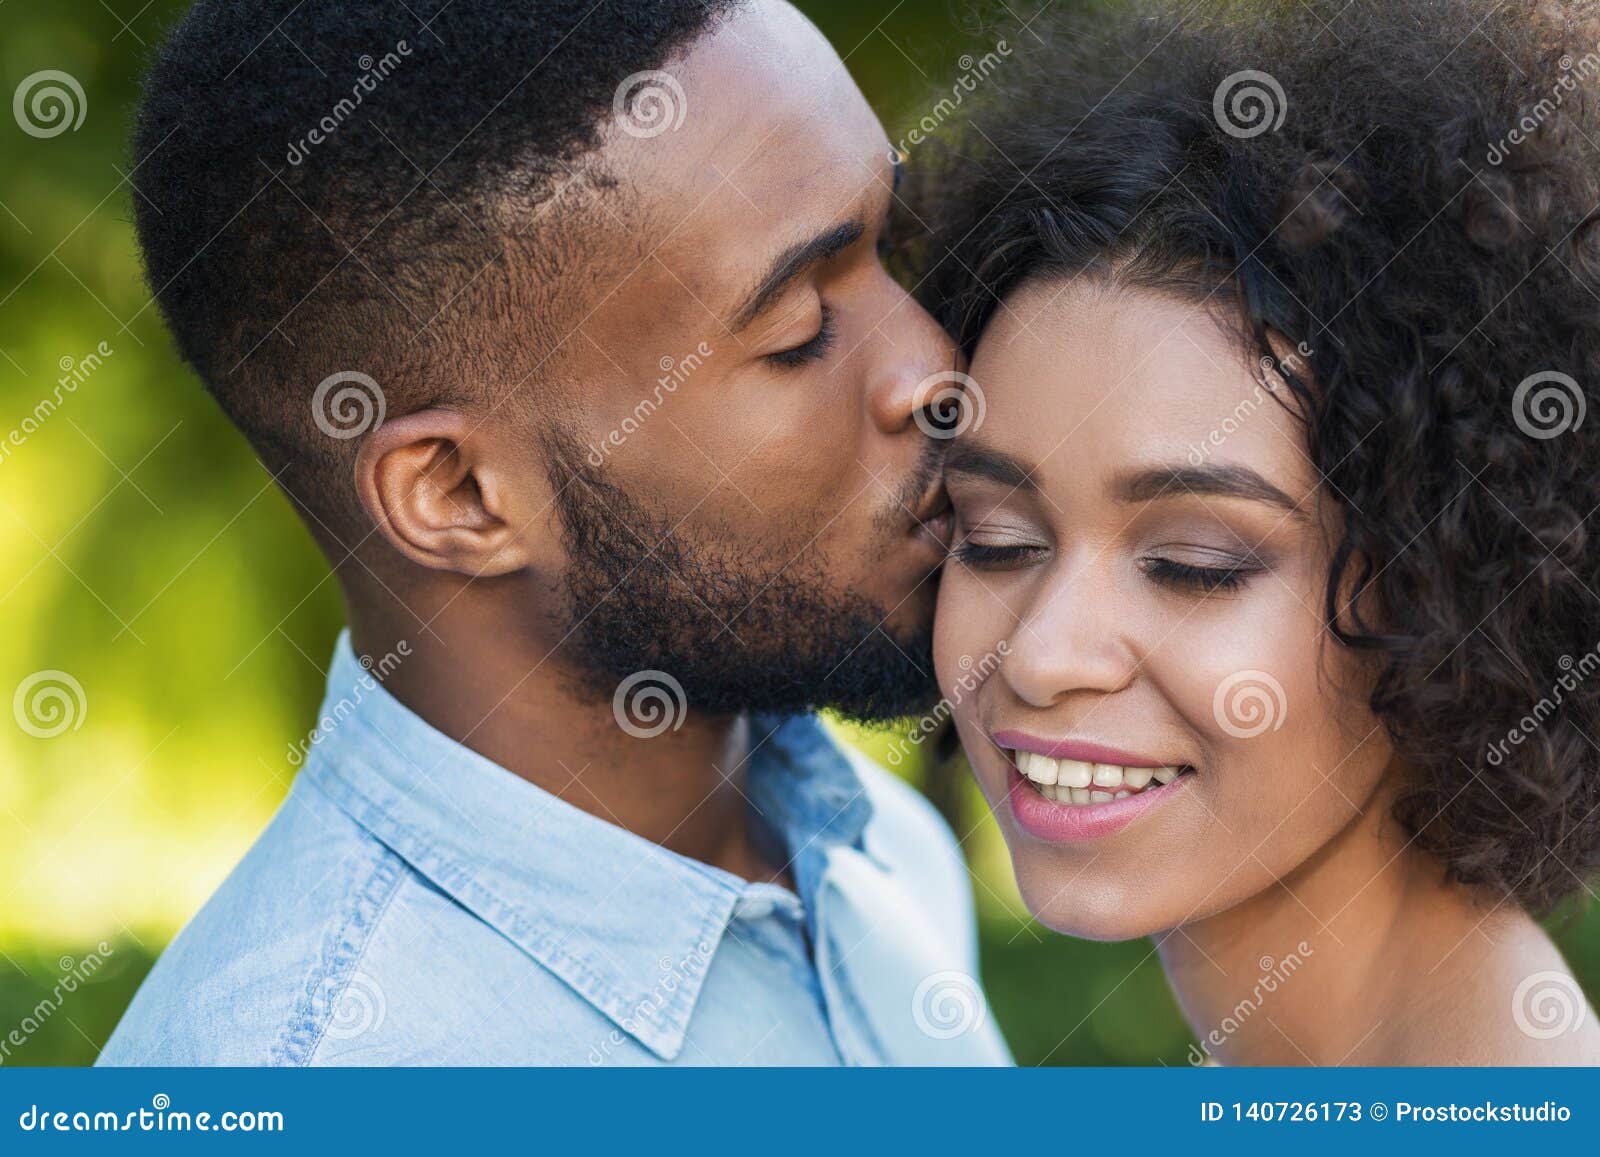 belinda hyde recommends black men kissing pic